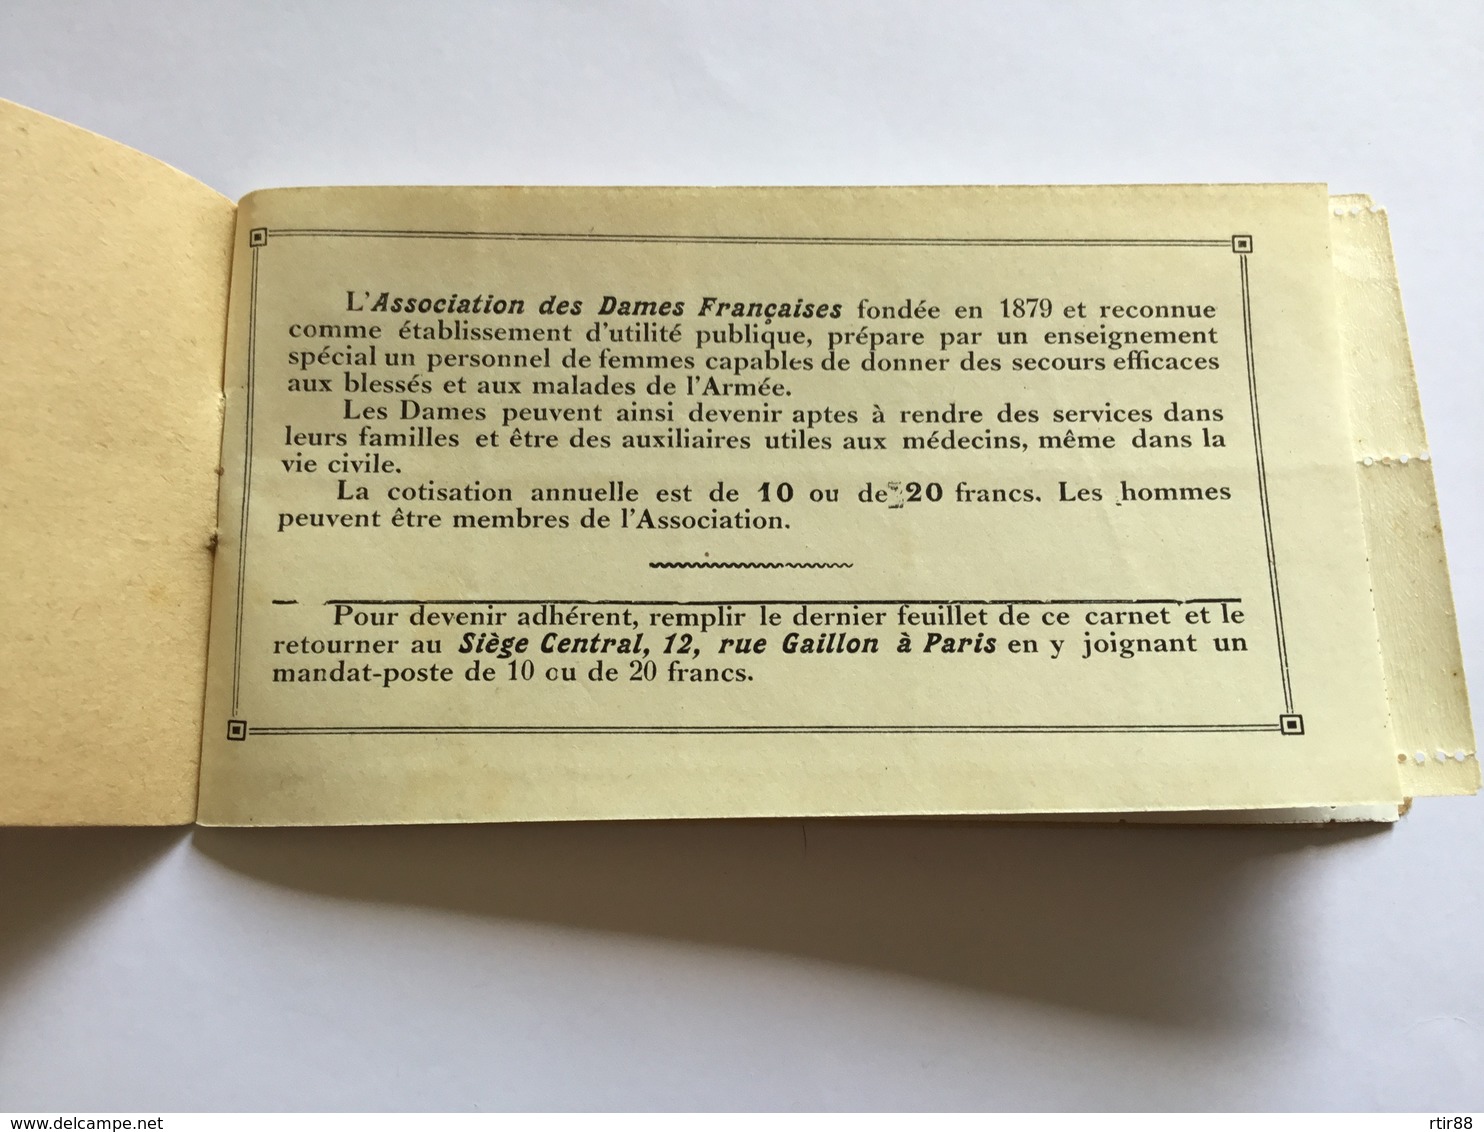 Rare Carnet De Timbres Croix Rouge Française Pour Les Blessés Effigie Des Chefs 1914-18 - 1914-18